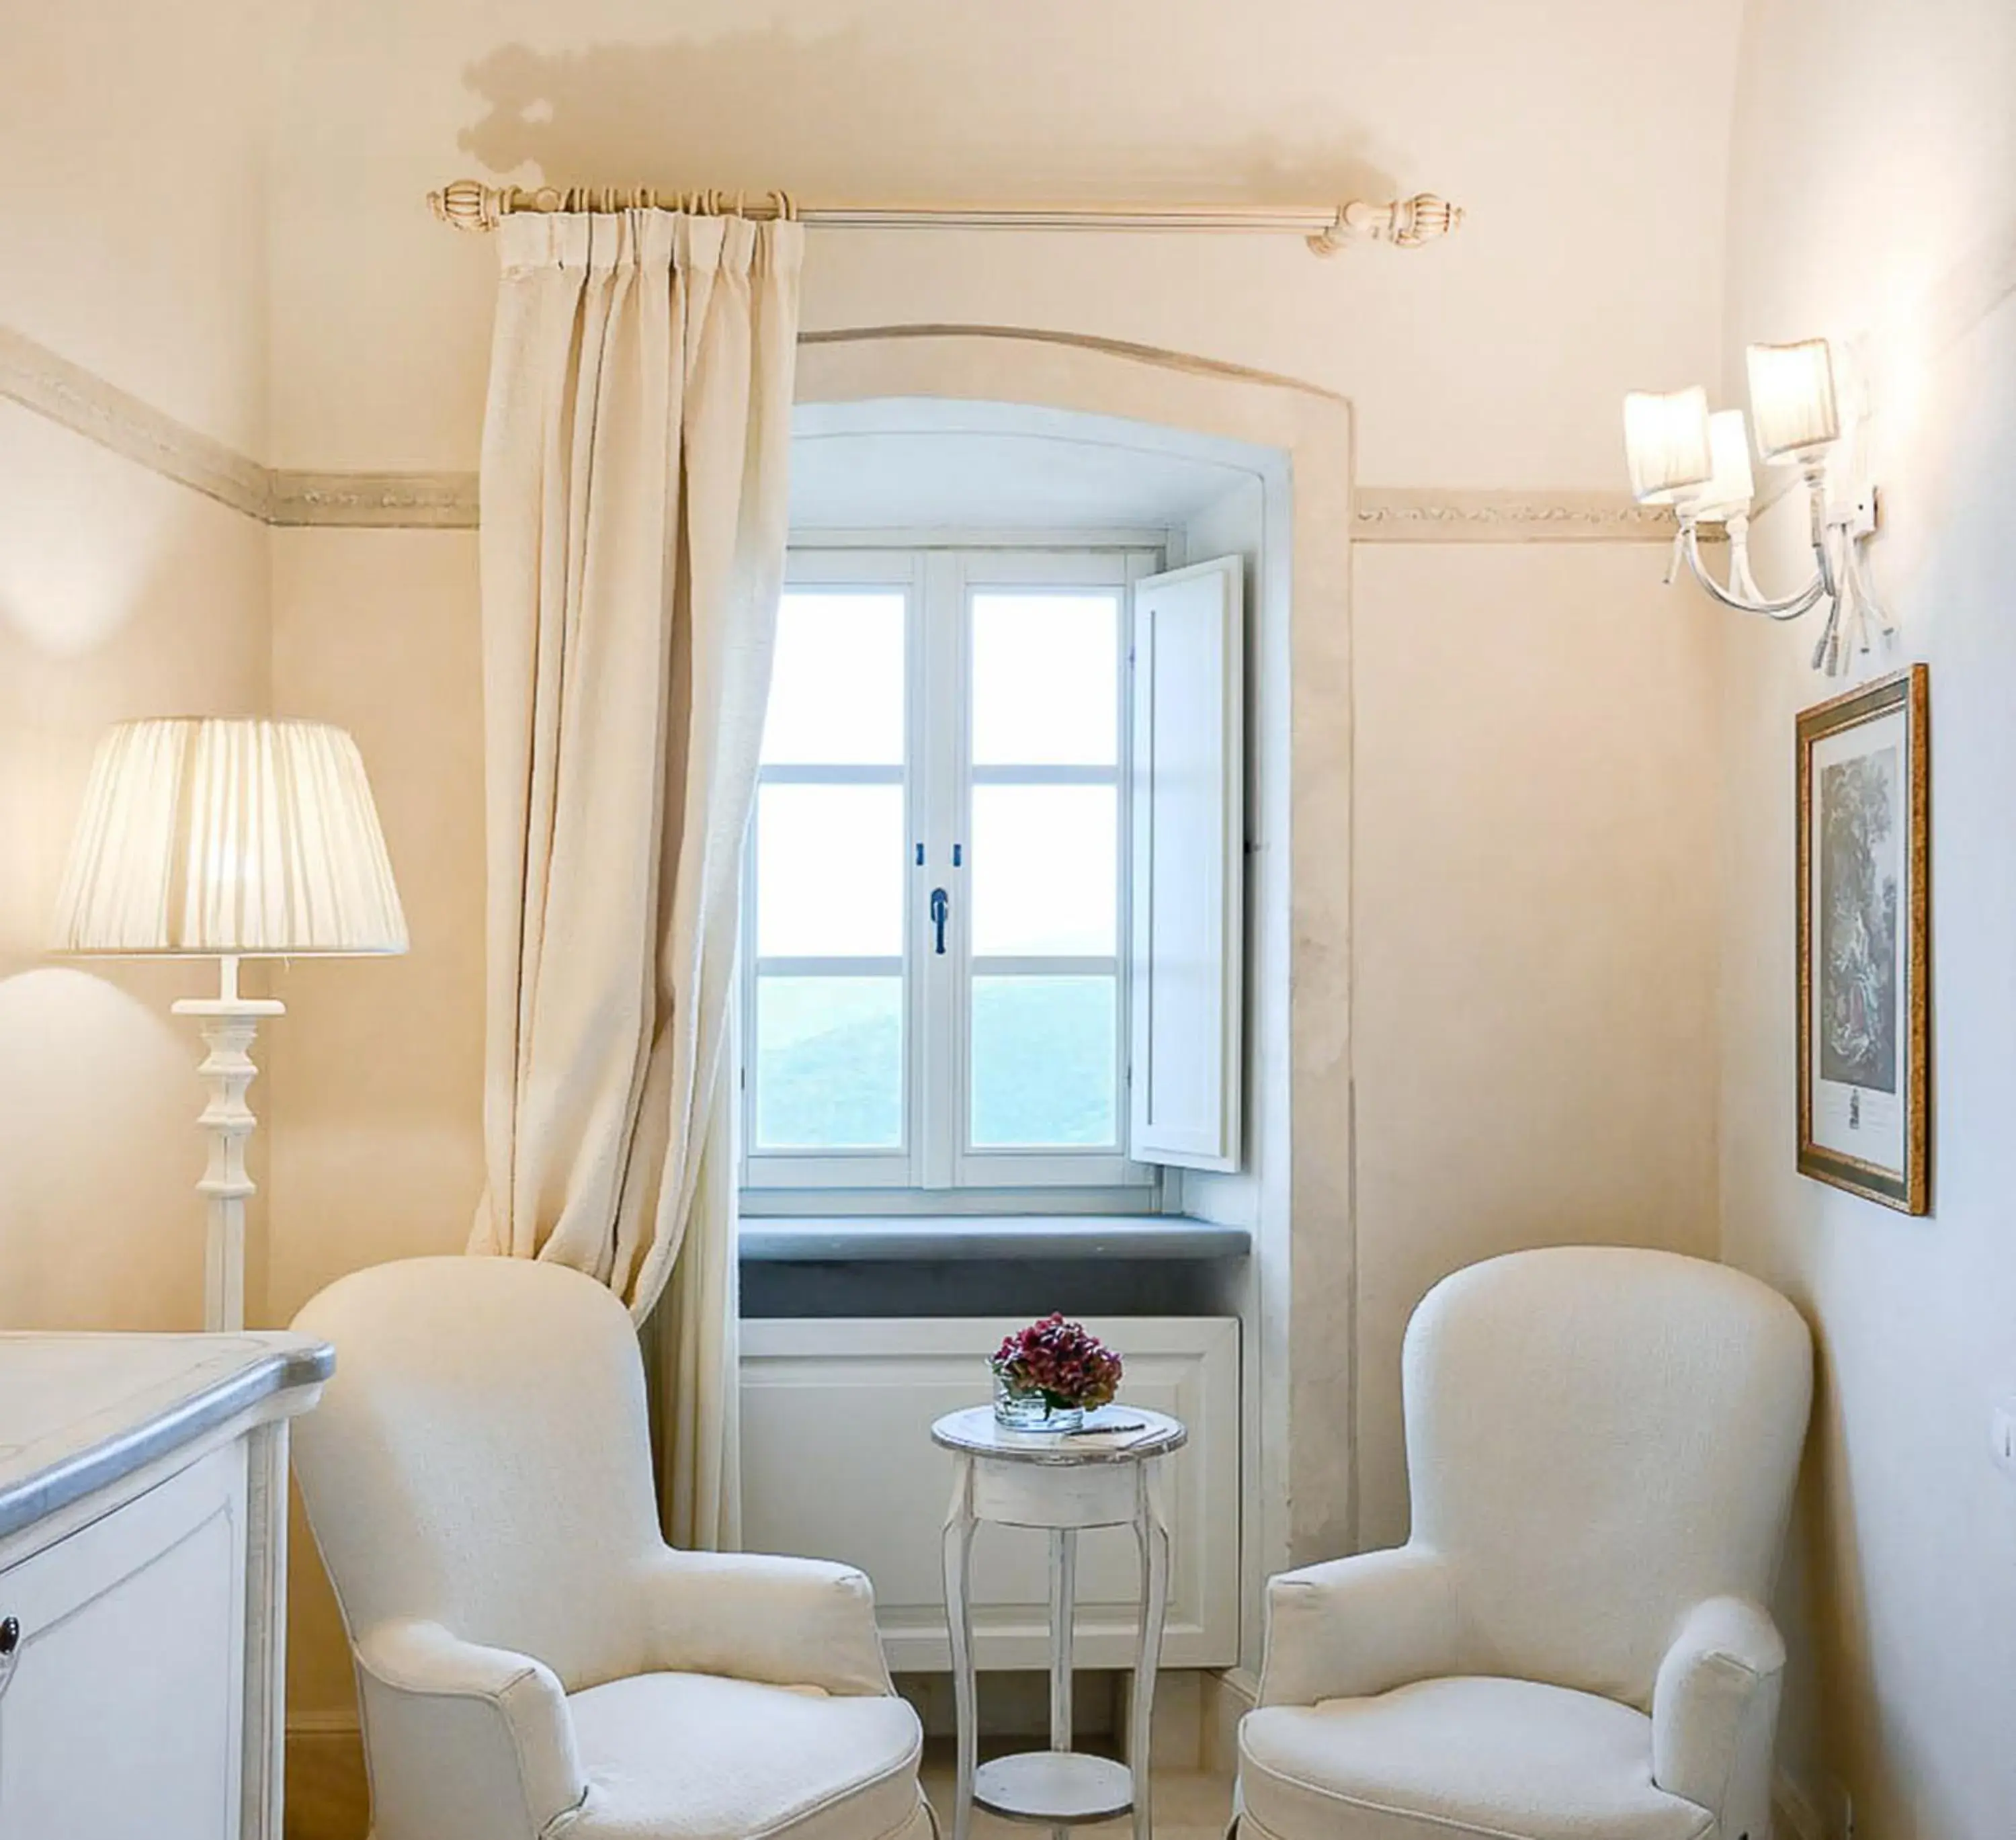 Bedroom, Seating Area in Monastero Di Cortona Hotel & Spa